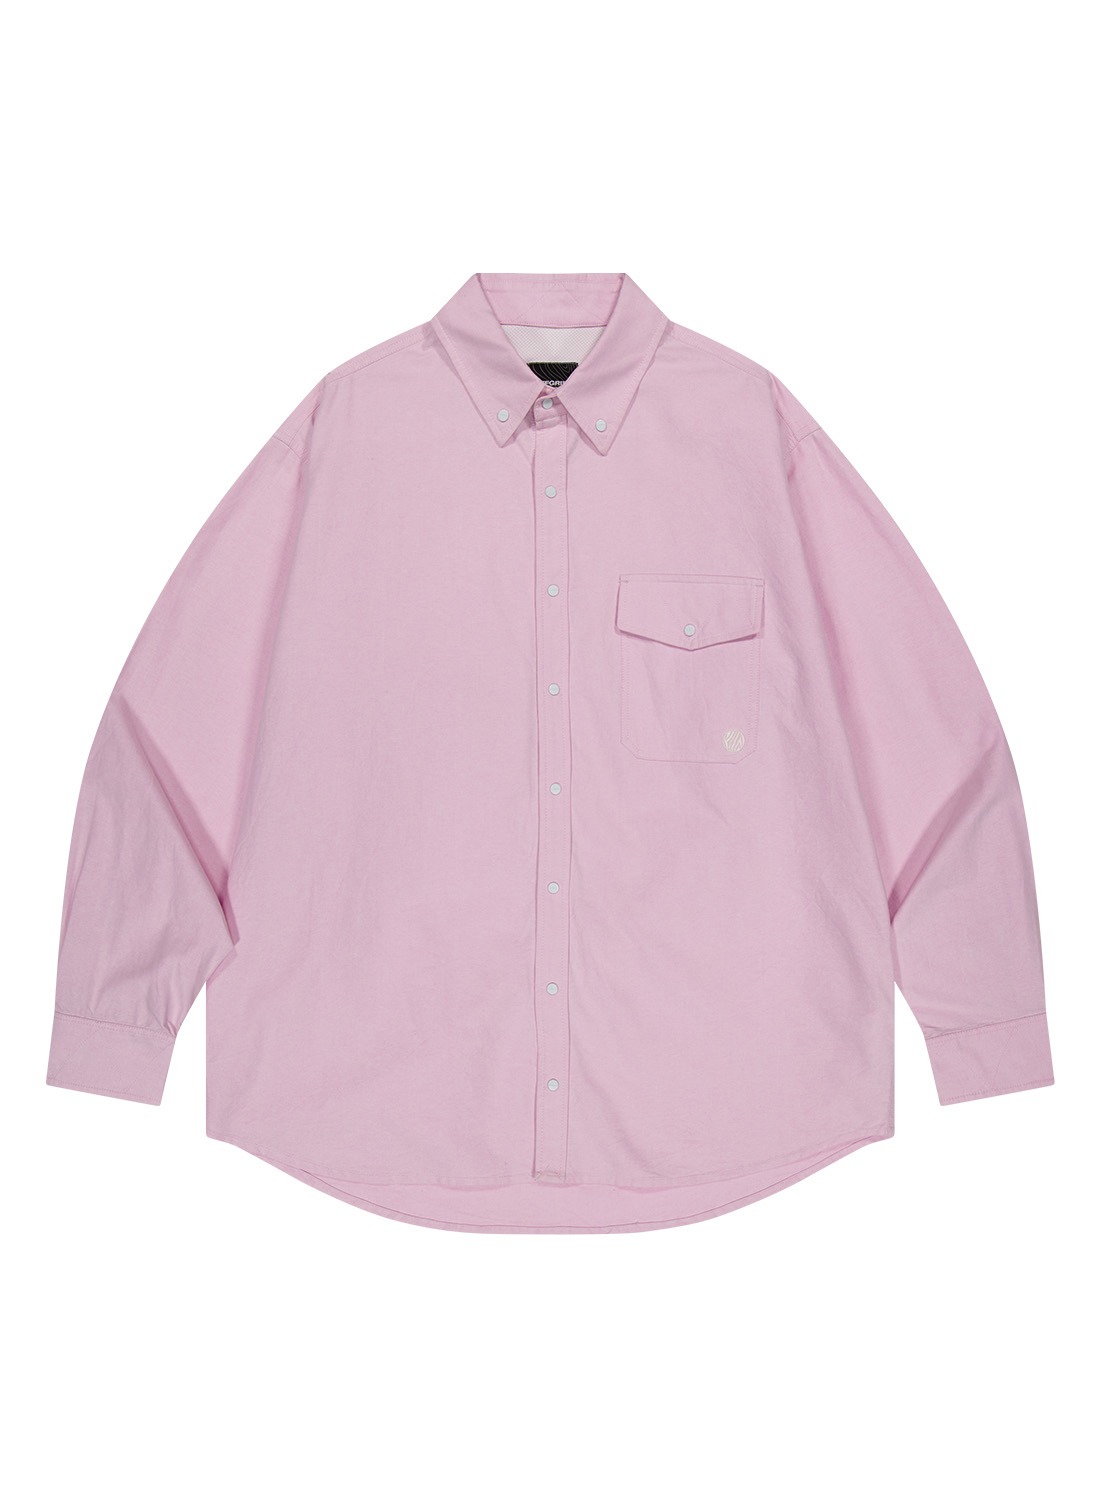 OG 스티치 옥스포드 스냅 셔츠-핑크